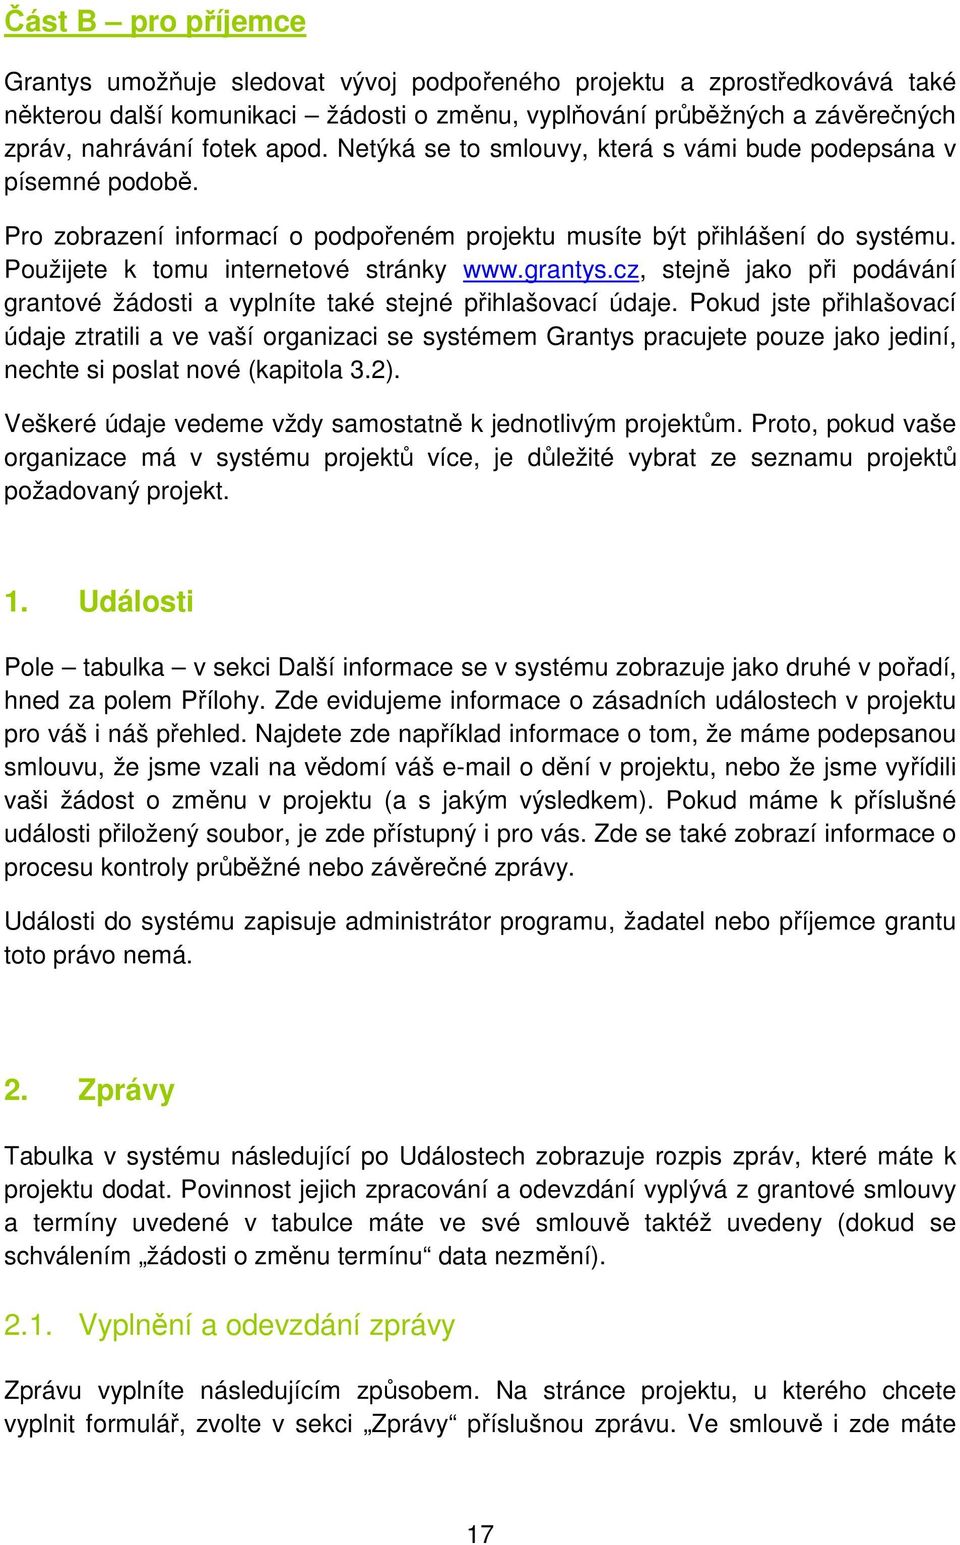 grantys.cz, stejně jako při podávání grantové žádosti a vyplníte také stejné přihlašovací údaje.